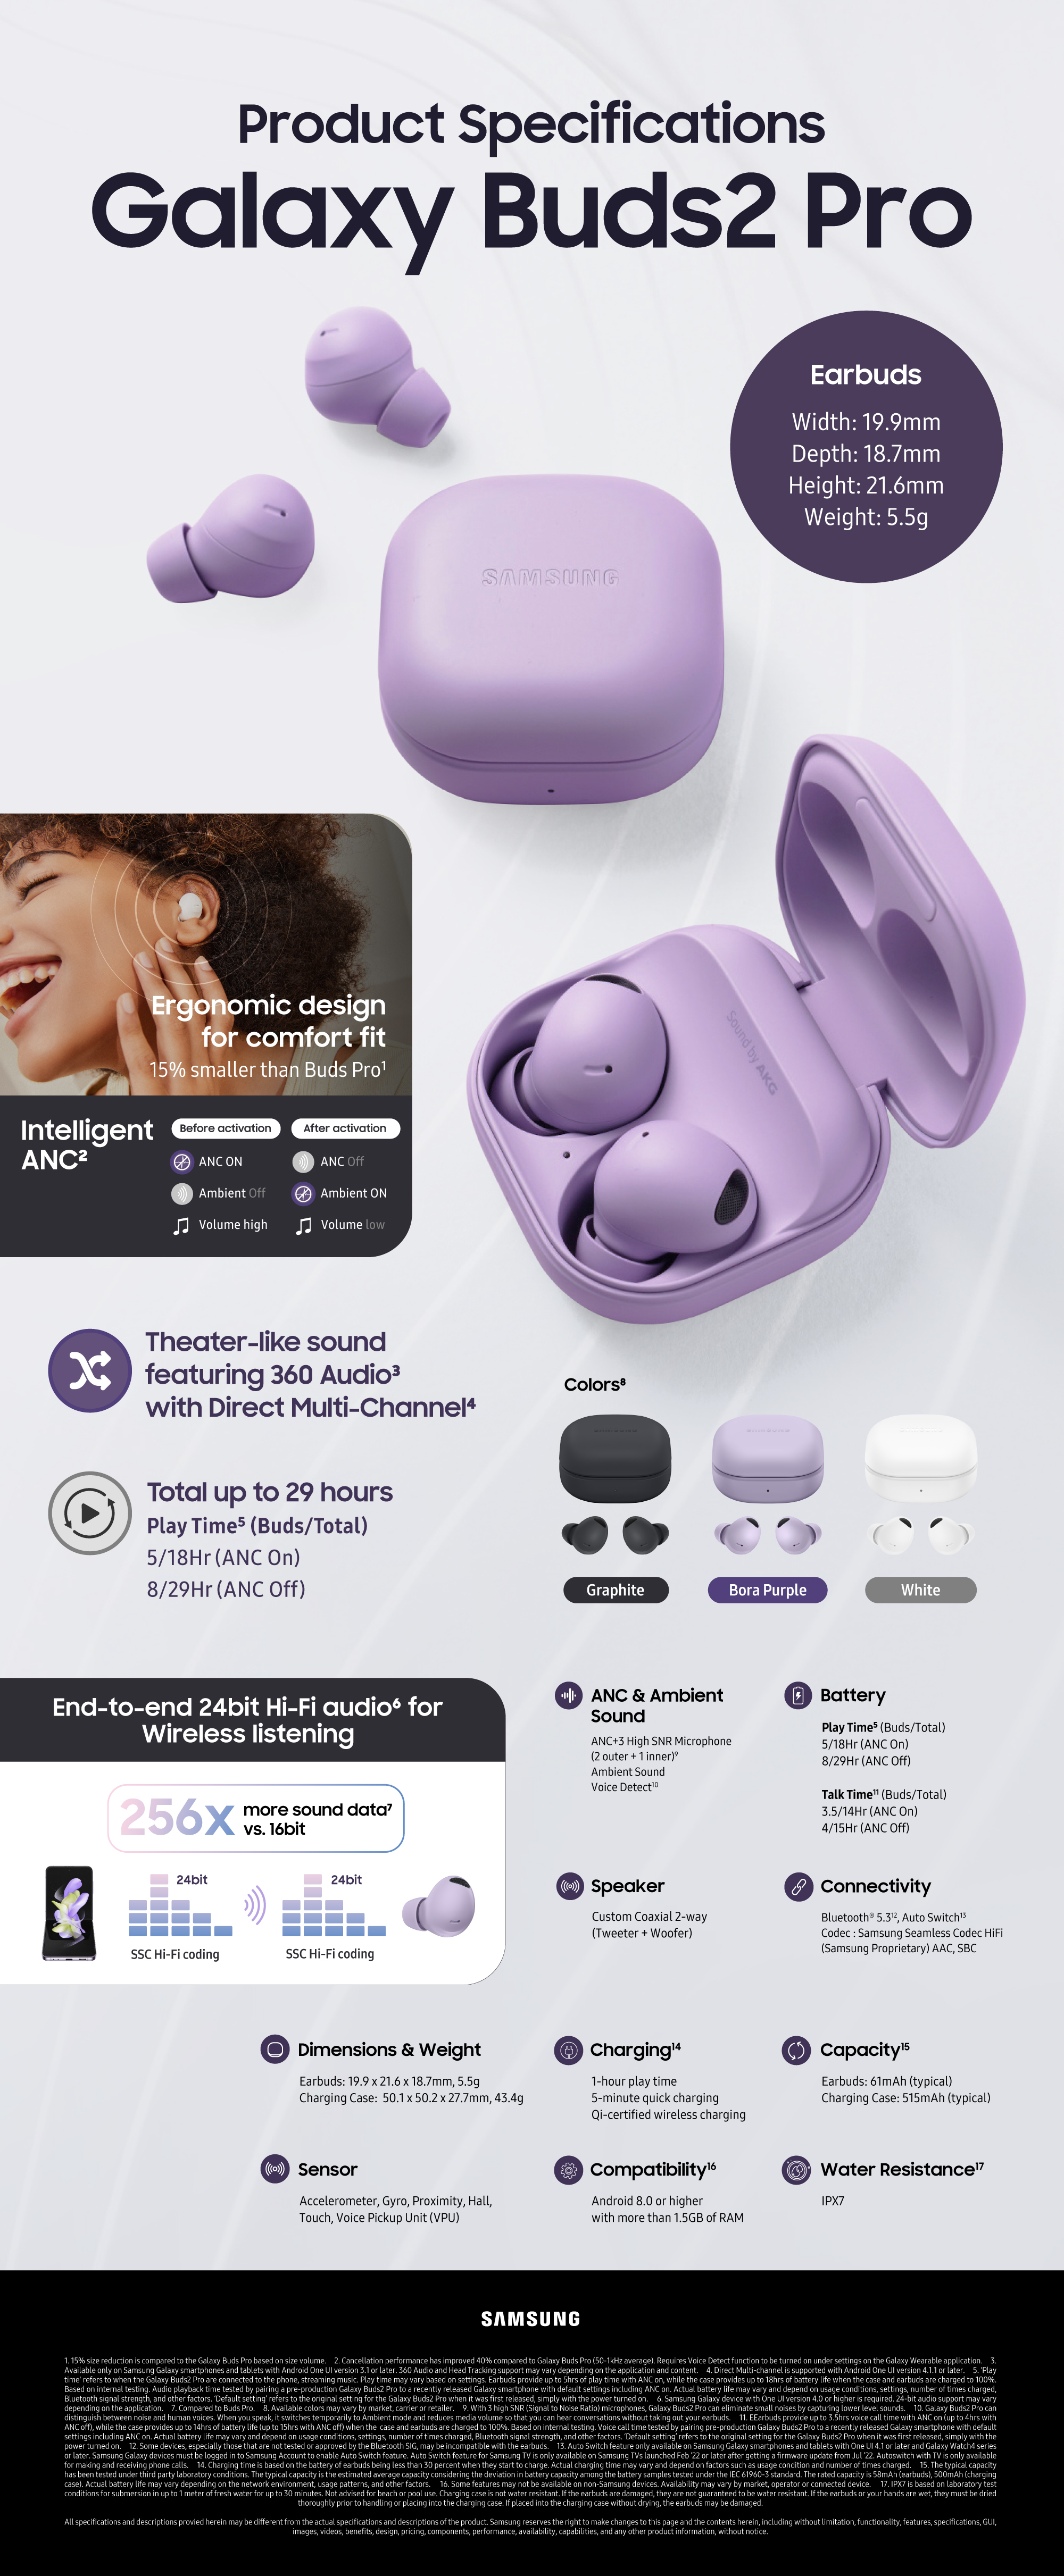 Âm thanh sống động Samsung Galaxy Buds2 Pro - Hãy khám phá âm thanh sống động và chất lượng của tai nghe Samsung Galaxy Buds2 Pro. Với những tính năng tiêu chuẩn vượt trội, sản phẩm này sẽ khiến bạn phát cuồng về âm nhạc. Cùng xem hình ảnh và tìm hiểu thêm.